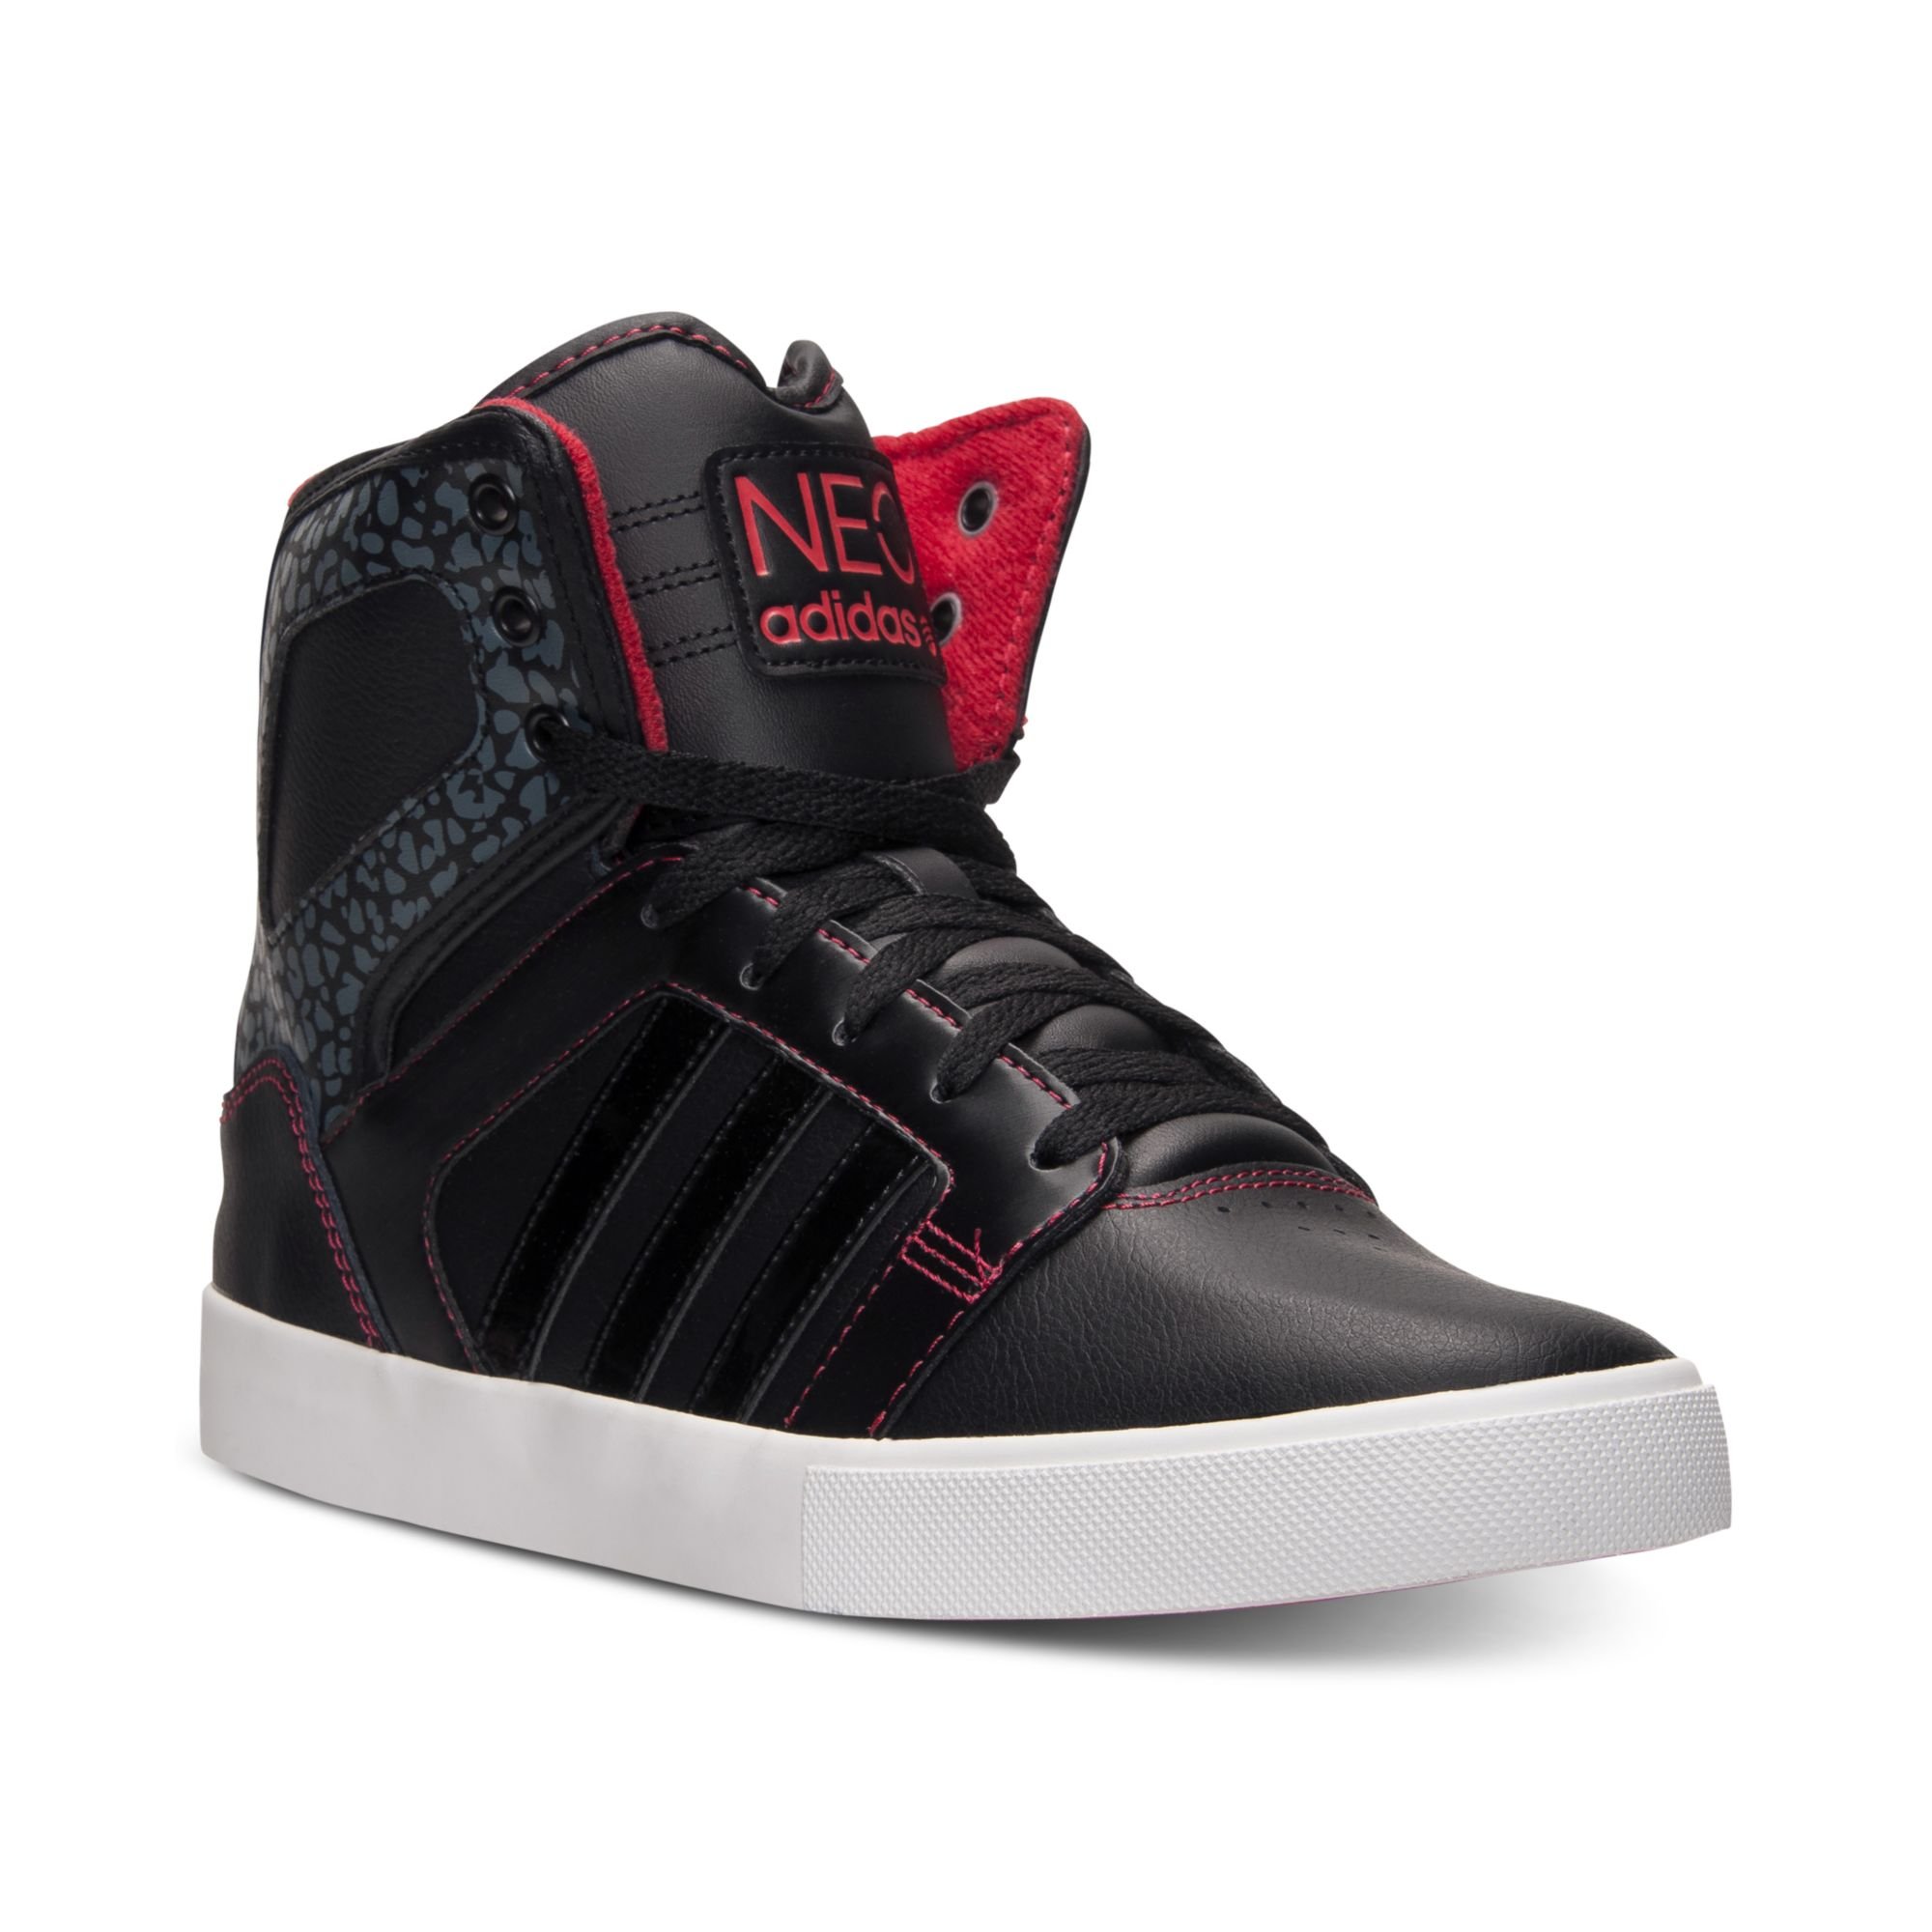 adidas Hi Top Casual Sneakers in Black for Men - Lyst